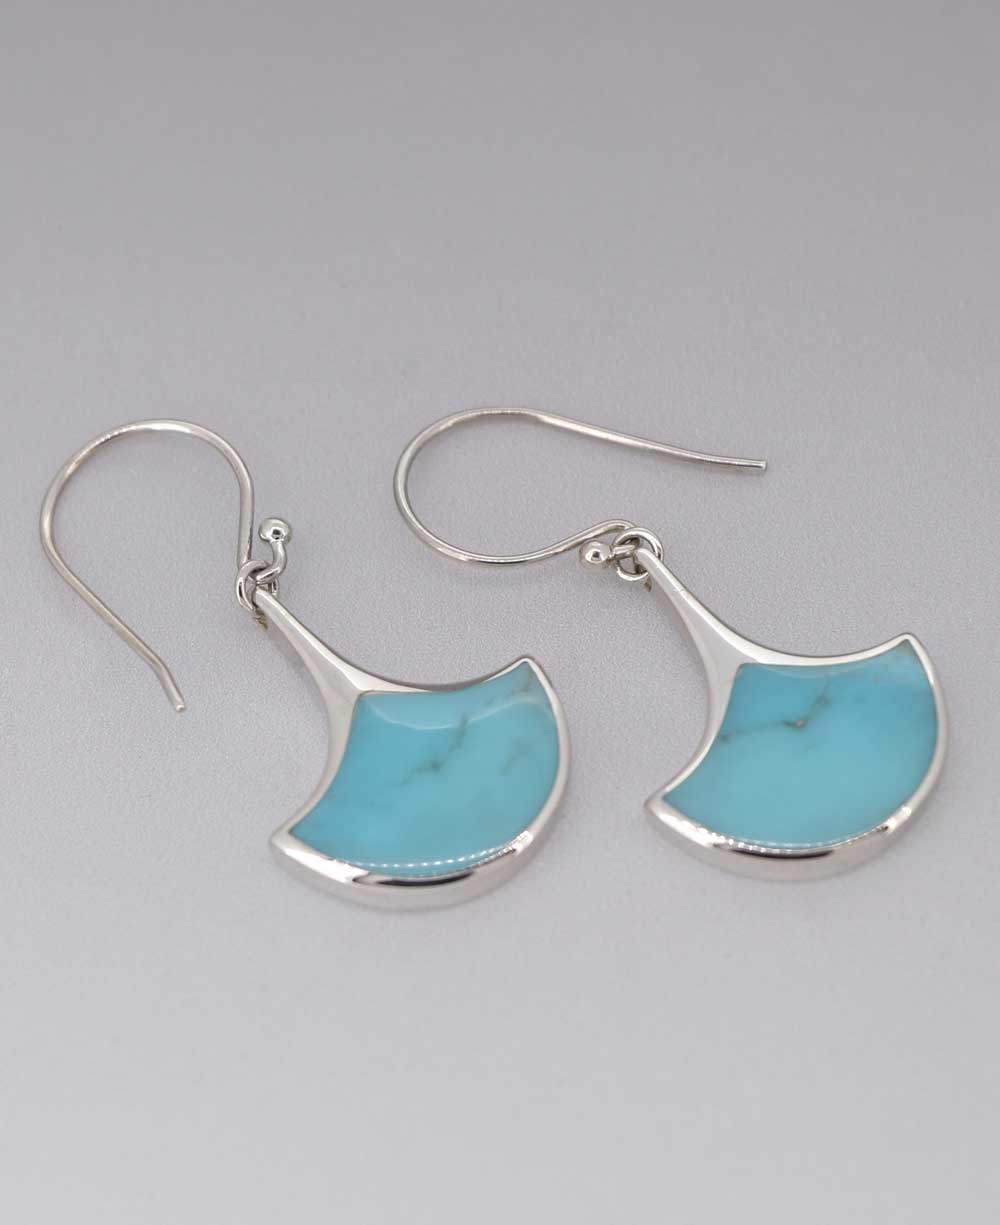 Fan-Shaped Turquoise Inlay Sterling Silver Earrings - Earrings